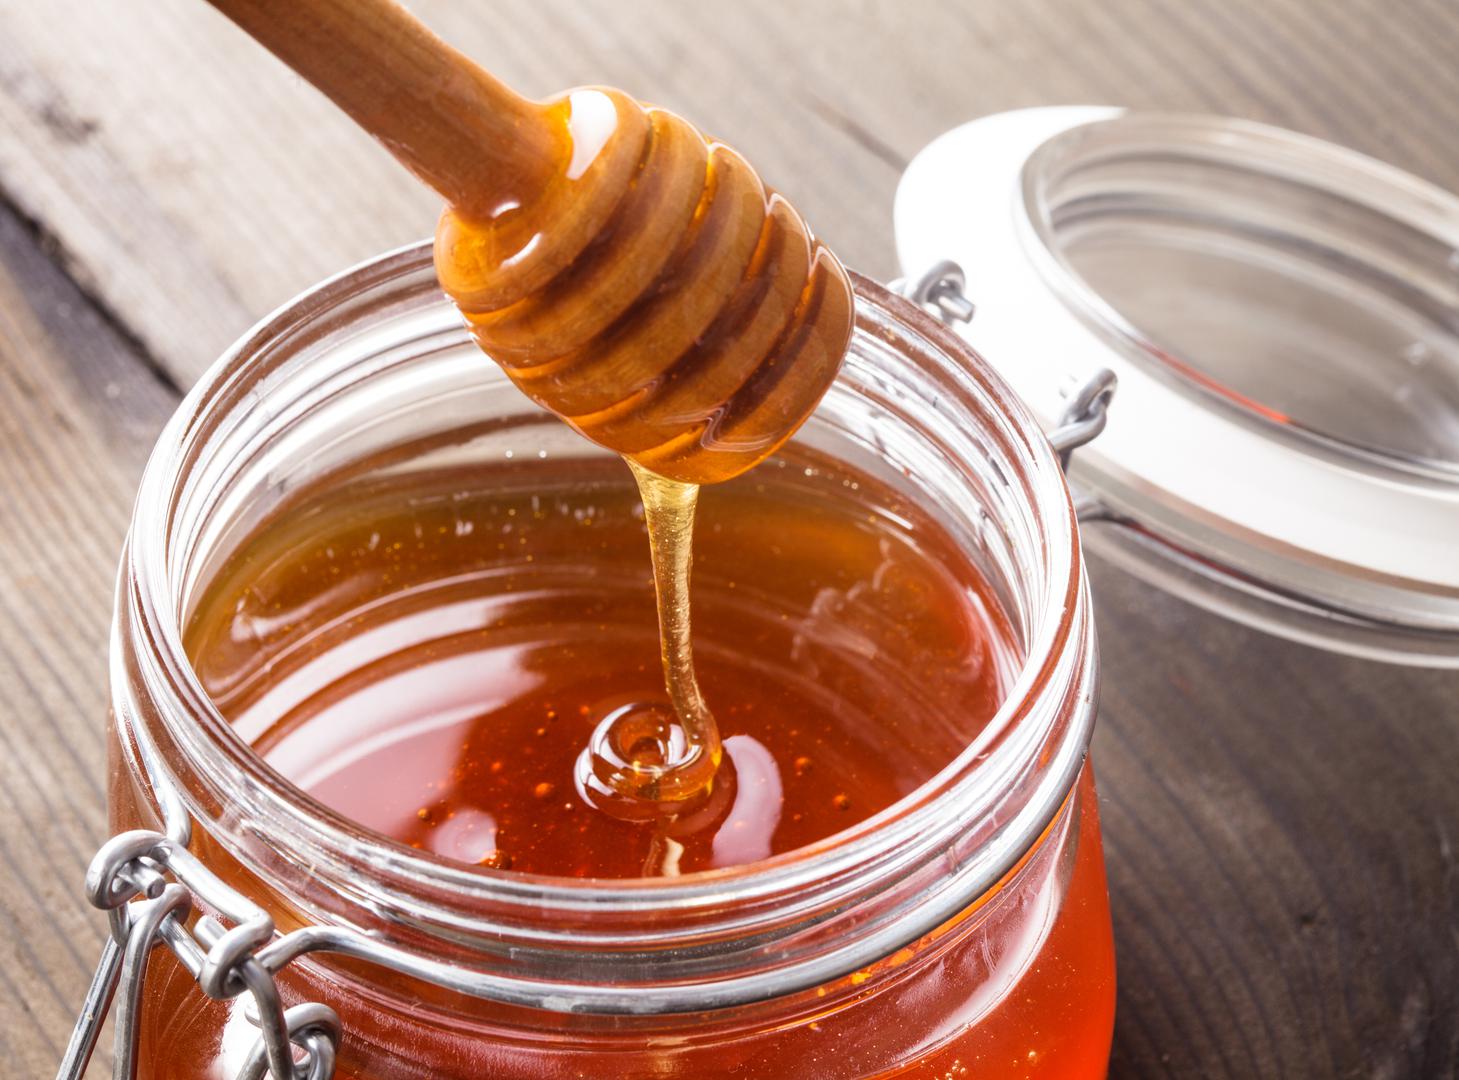 Kad se iz tegle uzme žlica meda i stavi u usta, med se jede, a ne guta. Ako se tada pod jezikom osjeti tvrdoća i gorčina, to je pravi, prirodni med. 